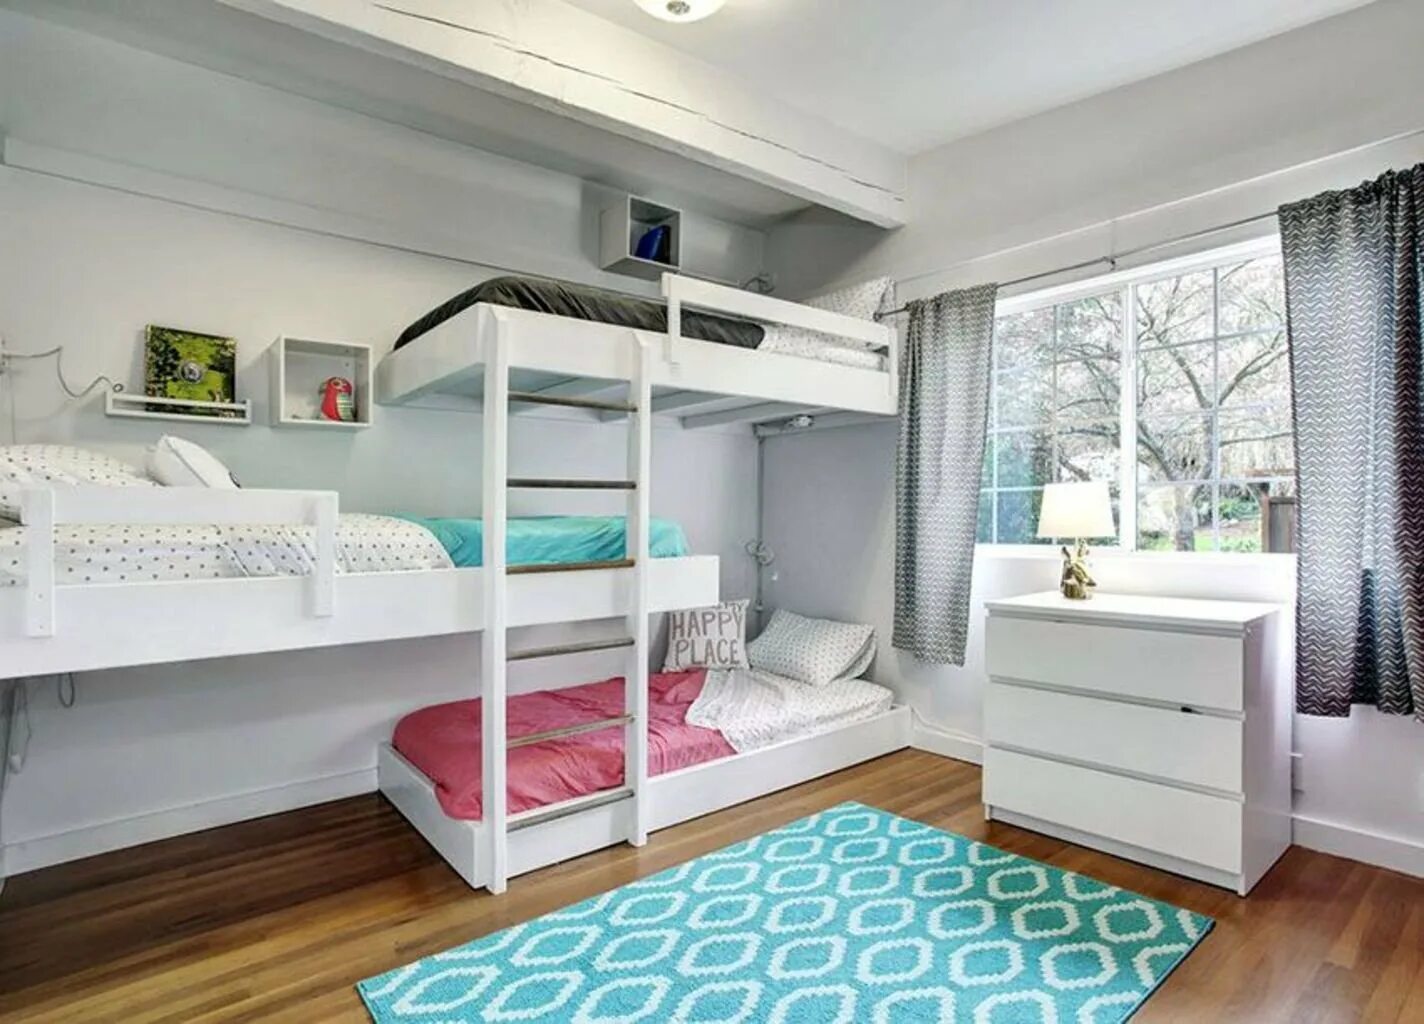 Двухэтажный спальный. Комната с двухэтажной кроватью. Комната для девочки с двухэтажной кроватью. Детская комната с двухэтажной кроватью. Комната для девочки подростка с двухэтажной кроватью.